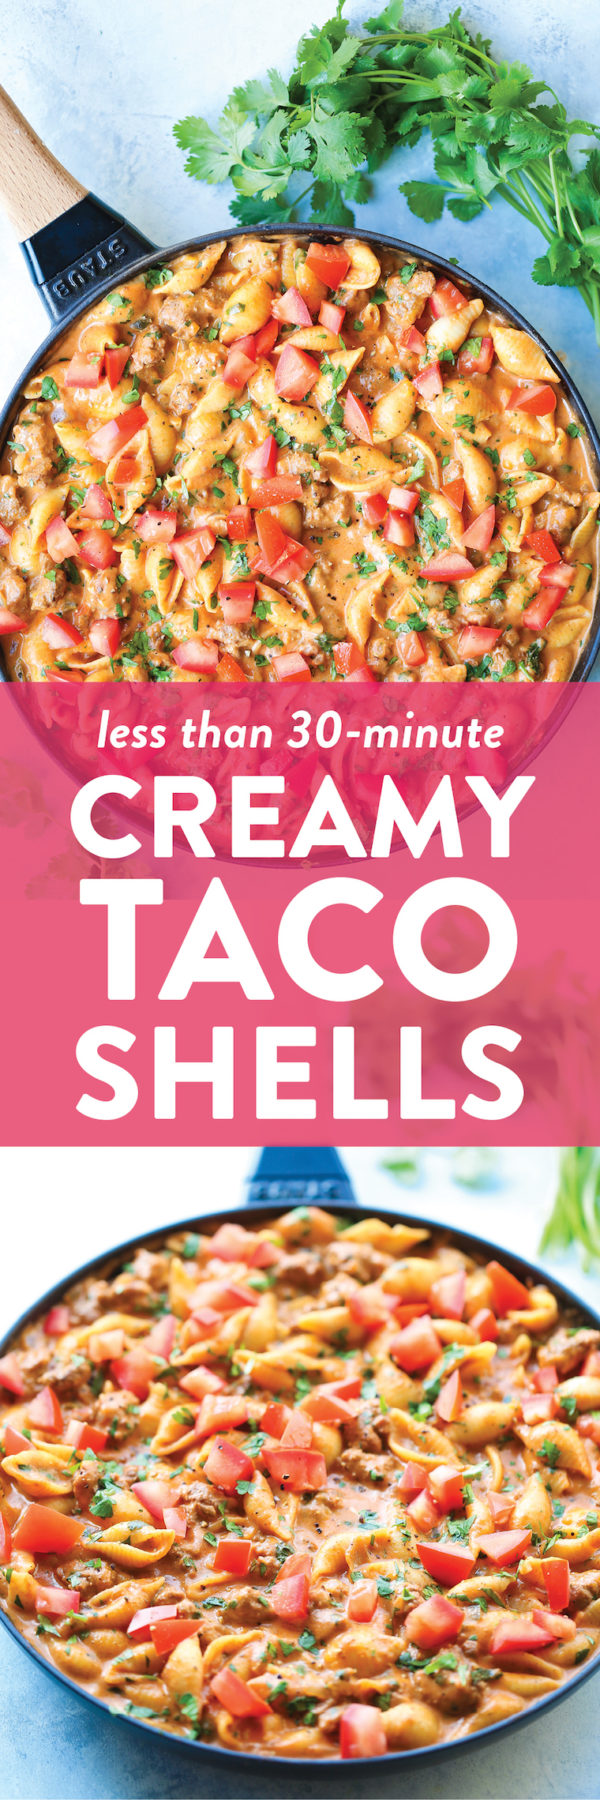 Creamy Taco Shells - Damn Delicious